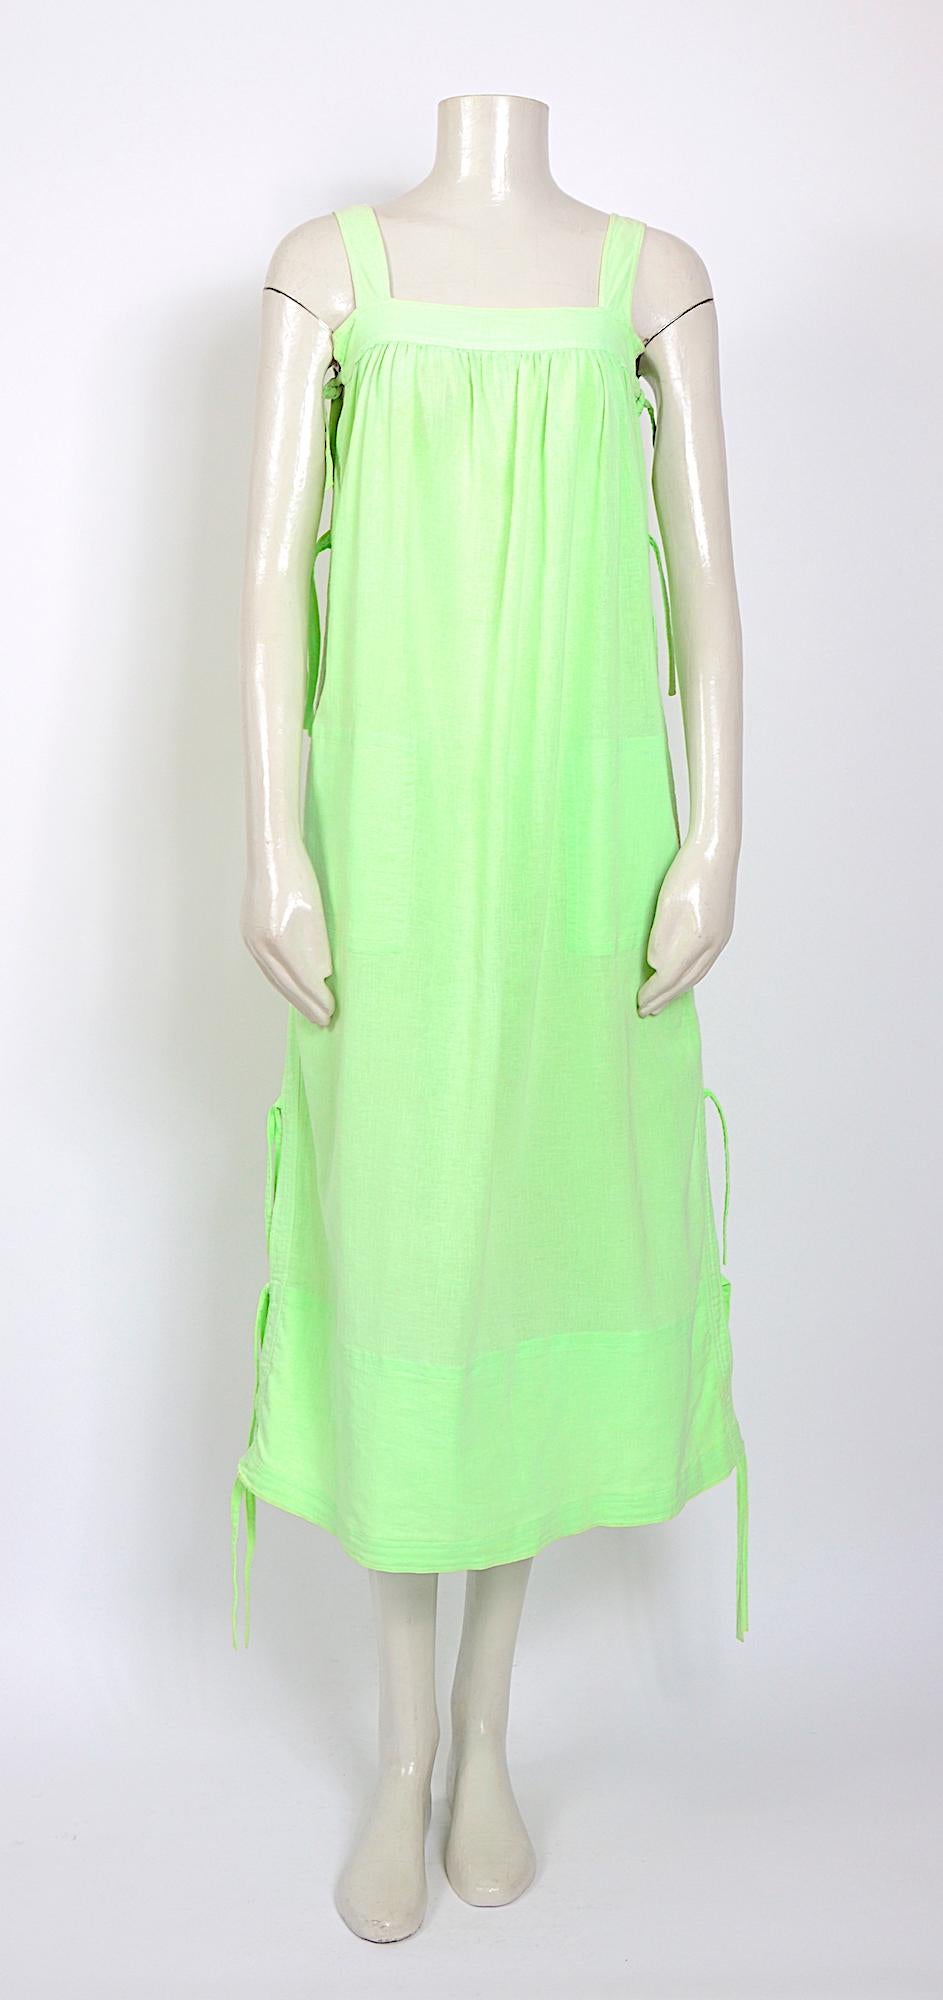 Andre Courreges collectible vintage 1970s cotton bright lime green cotton linen summer dress. 
Courreges taille 00
Mesures prises à plat : Ua à Ua 16,5inch/42cm (x2)- Taille 25inch/64cm(x2) - Longueur totale avec sangle 48inch/122cm